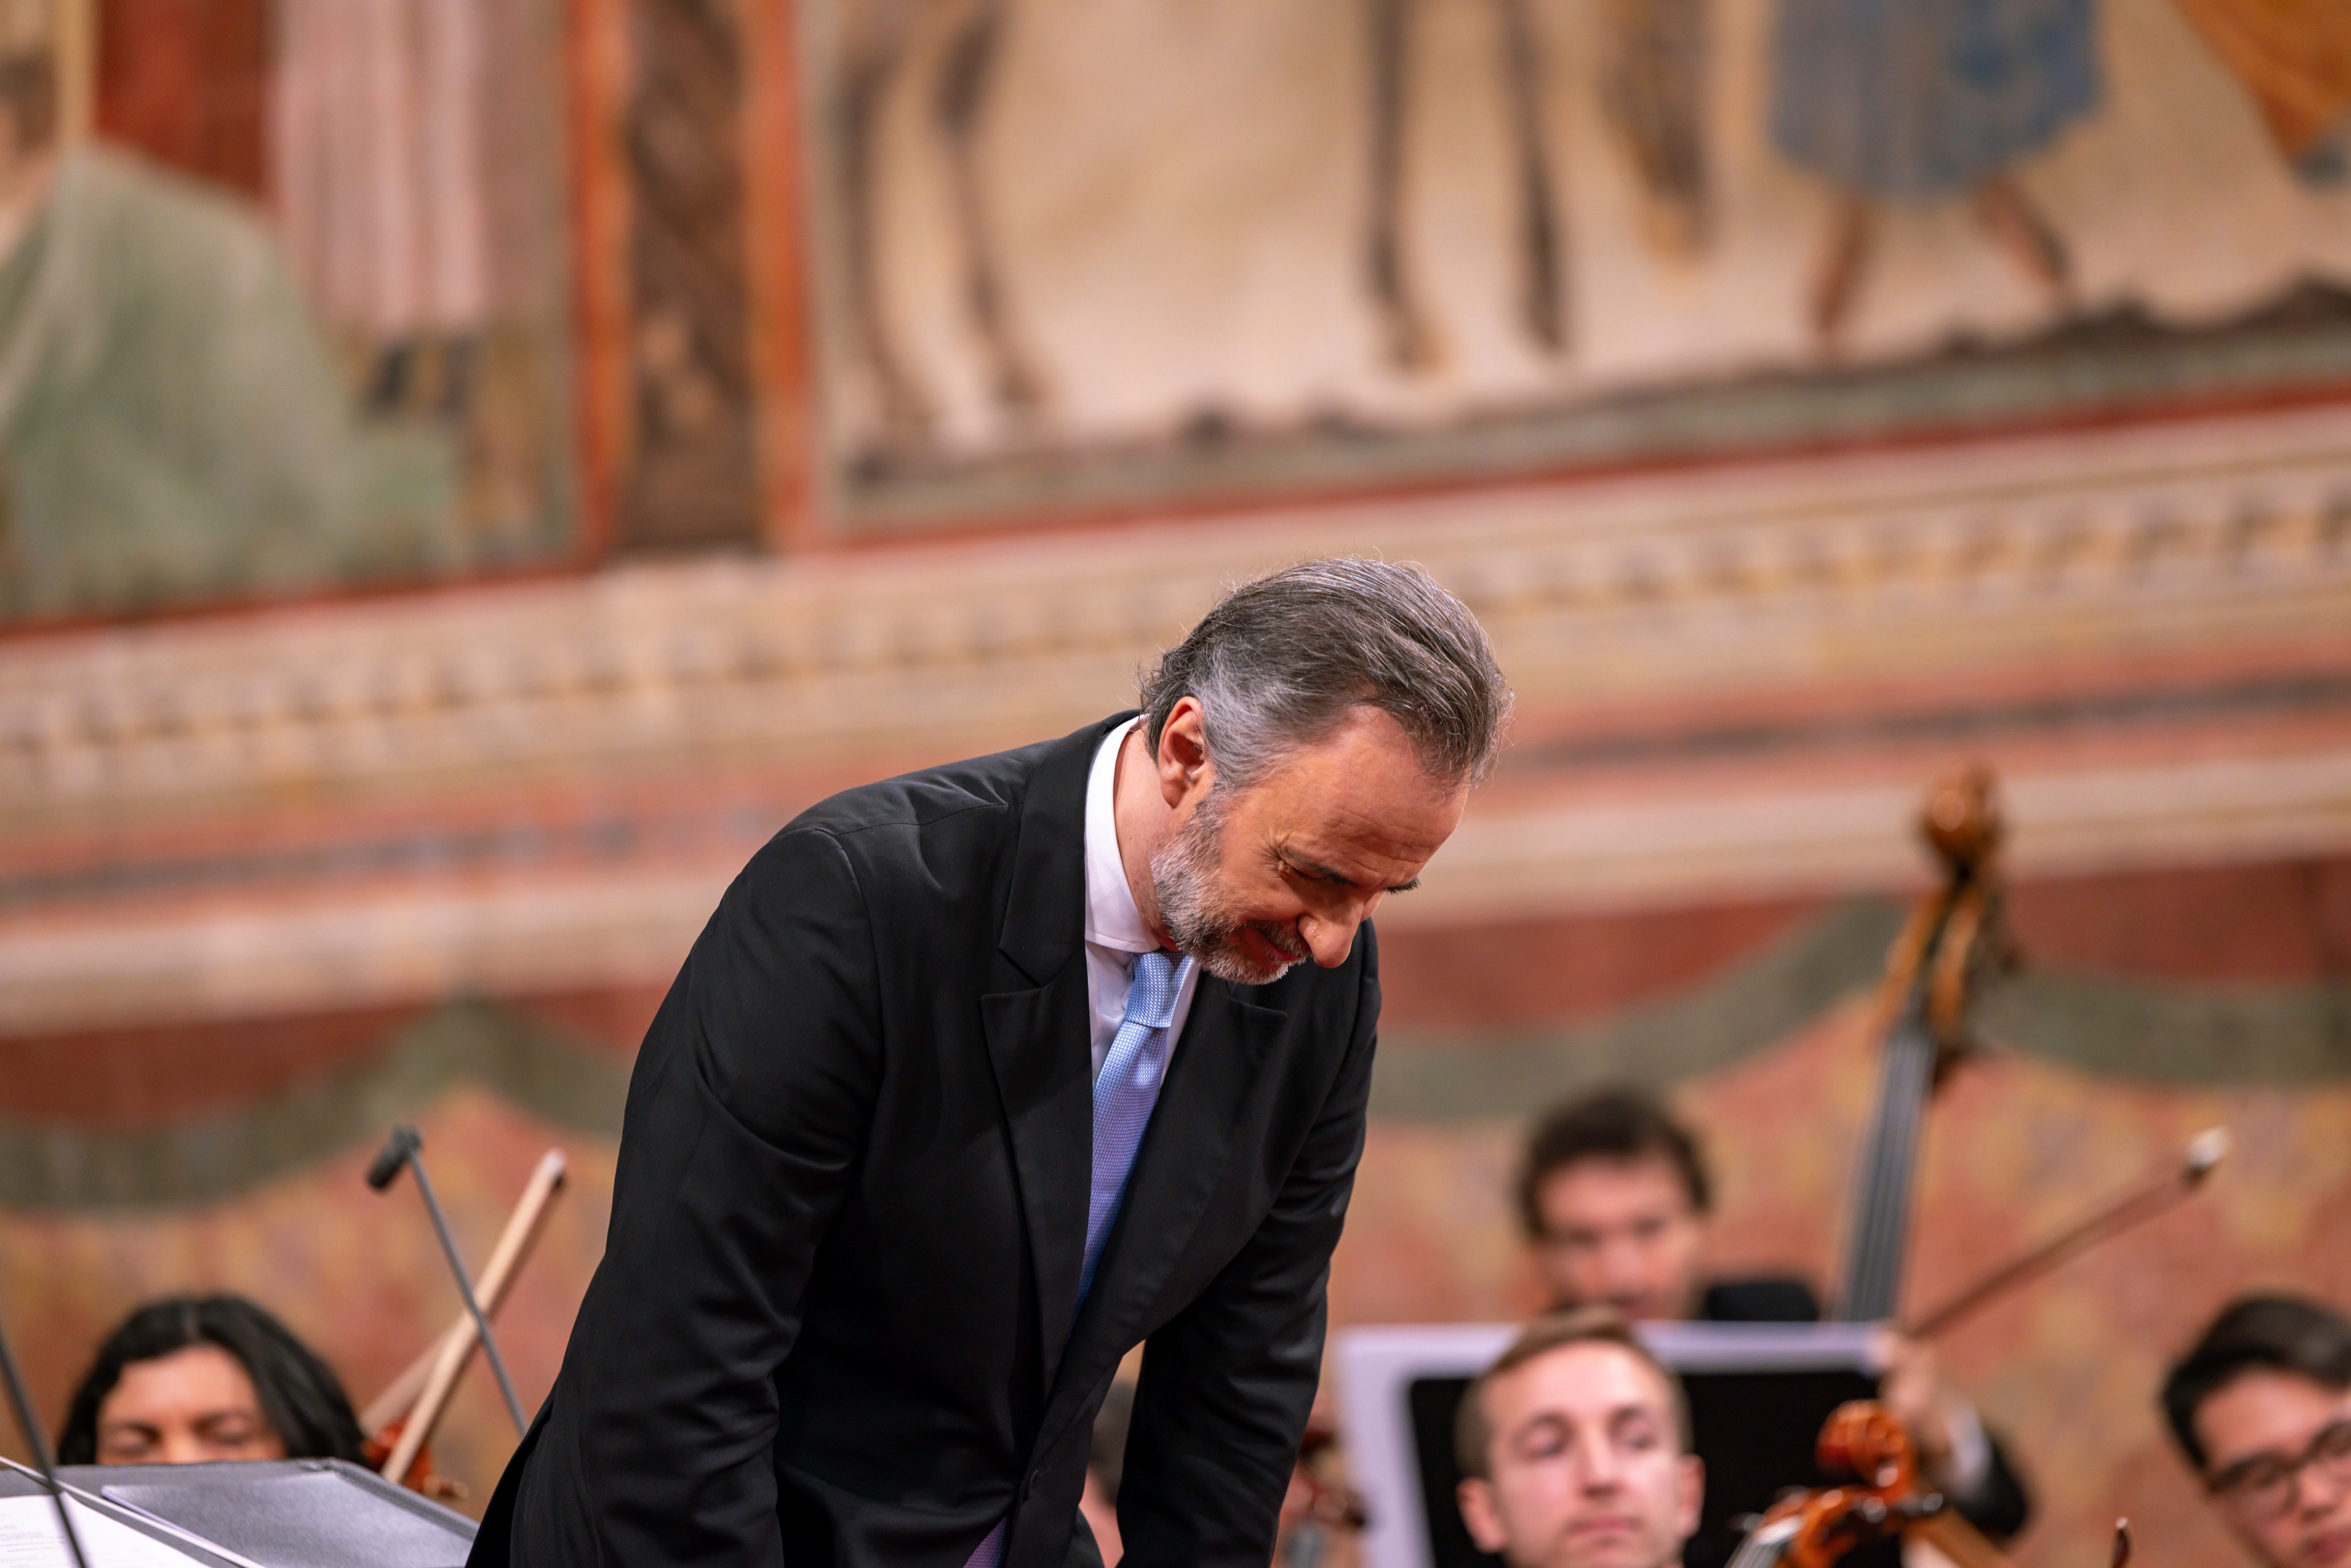 Le foto del XXXVIII Concerto di Natale da Assisi